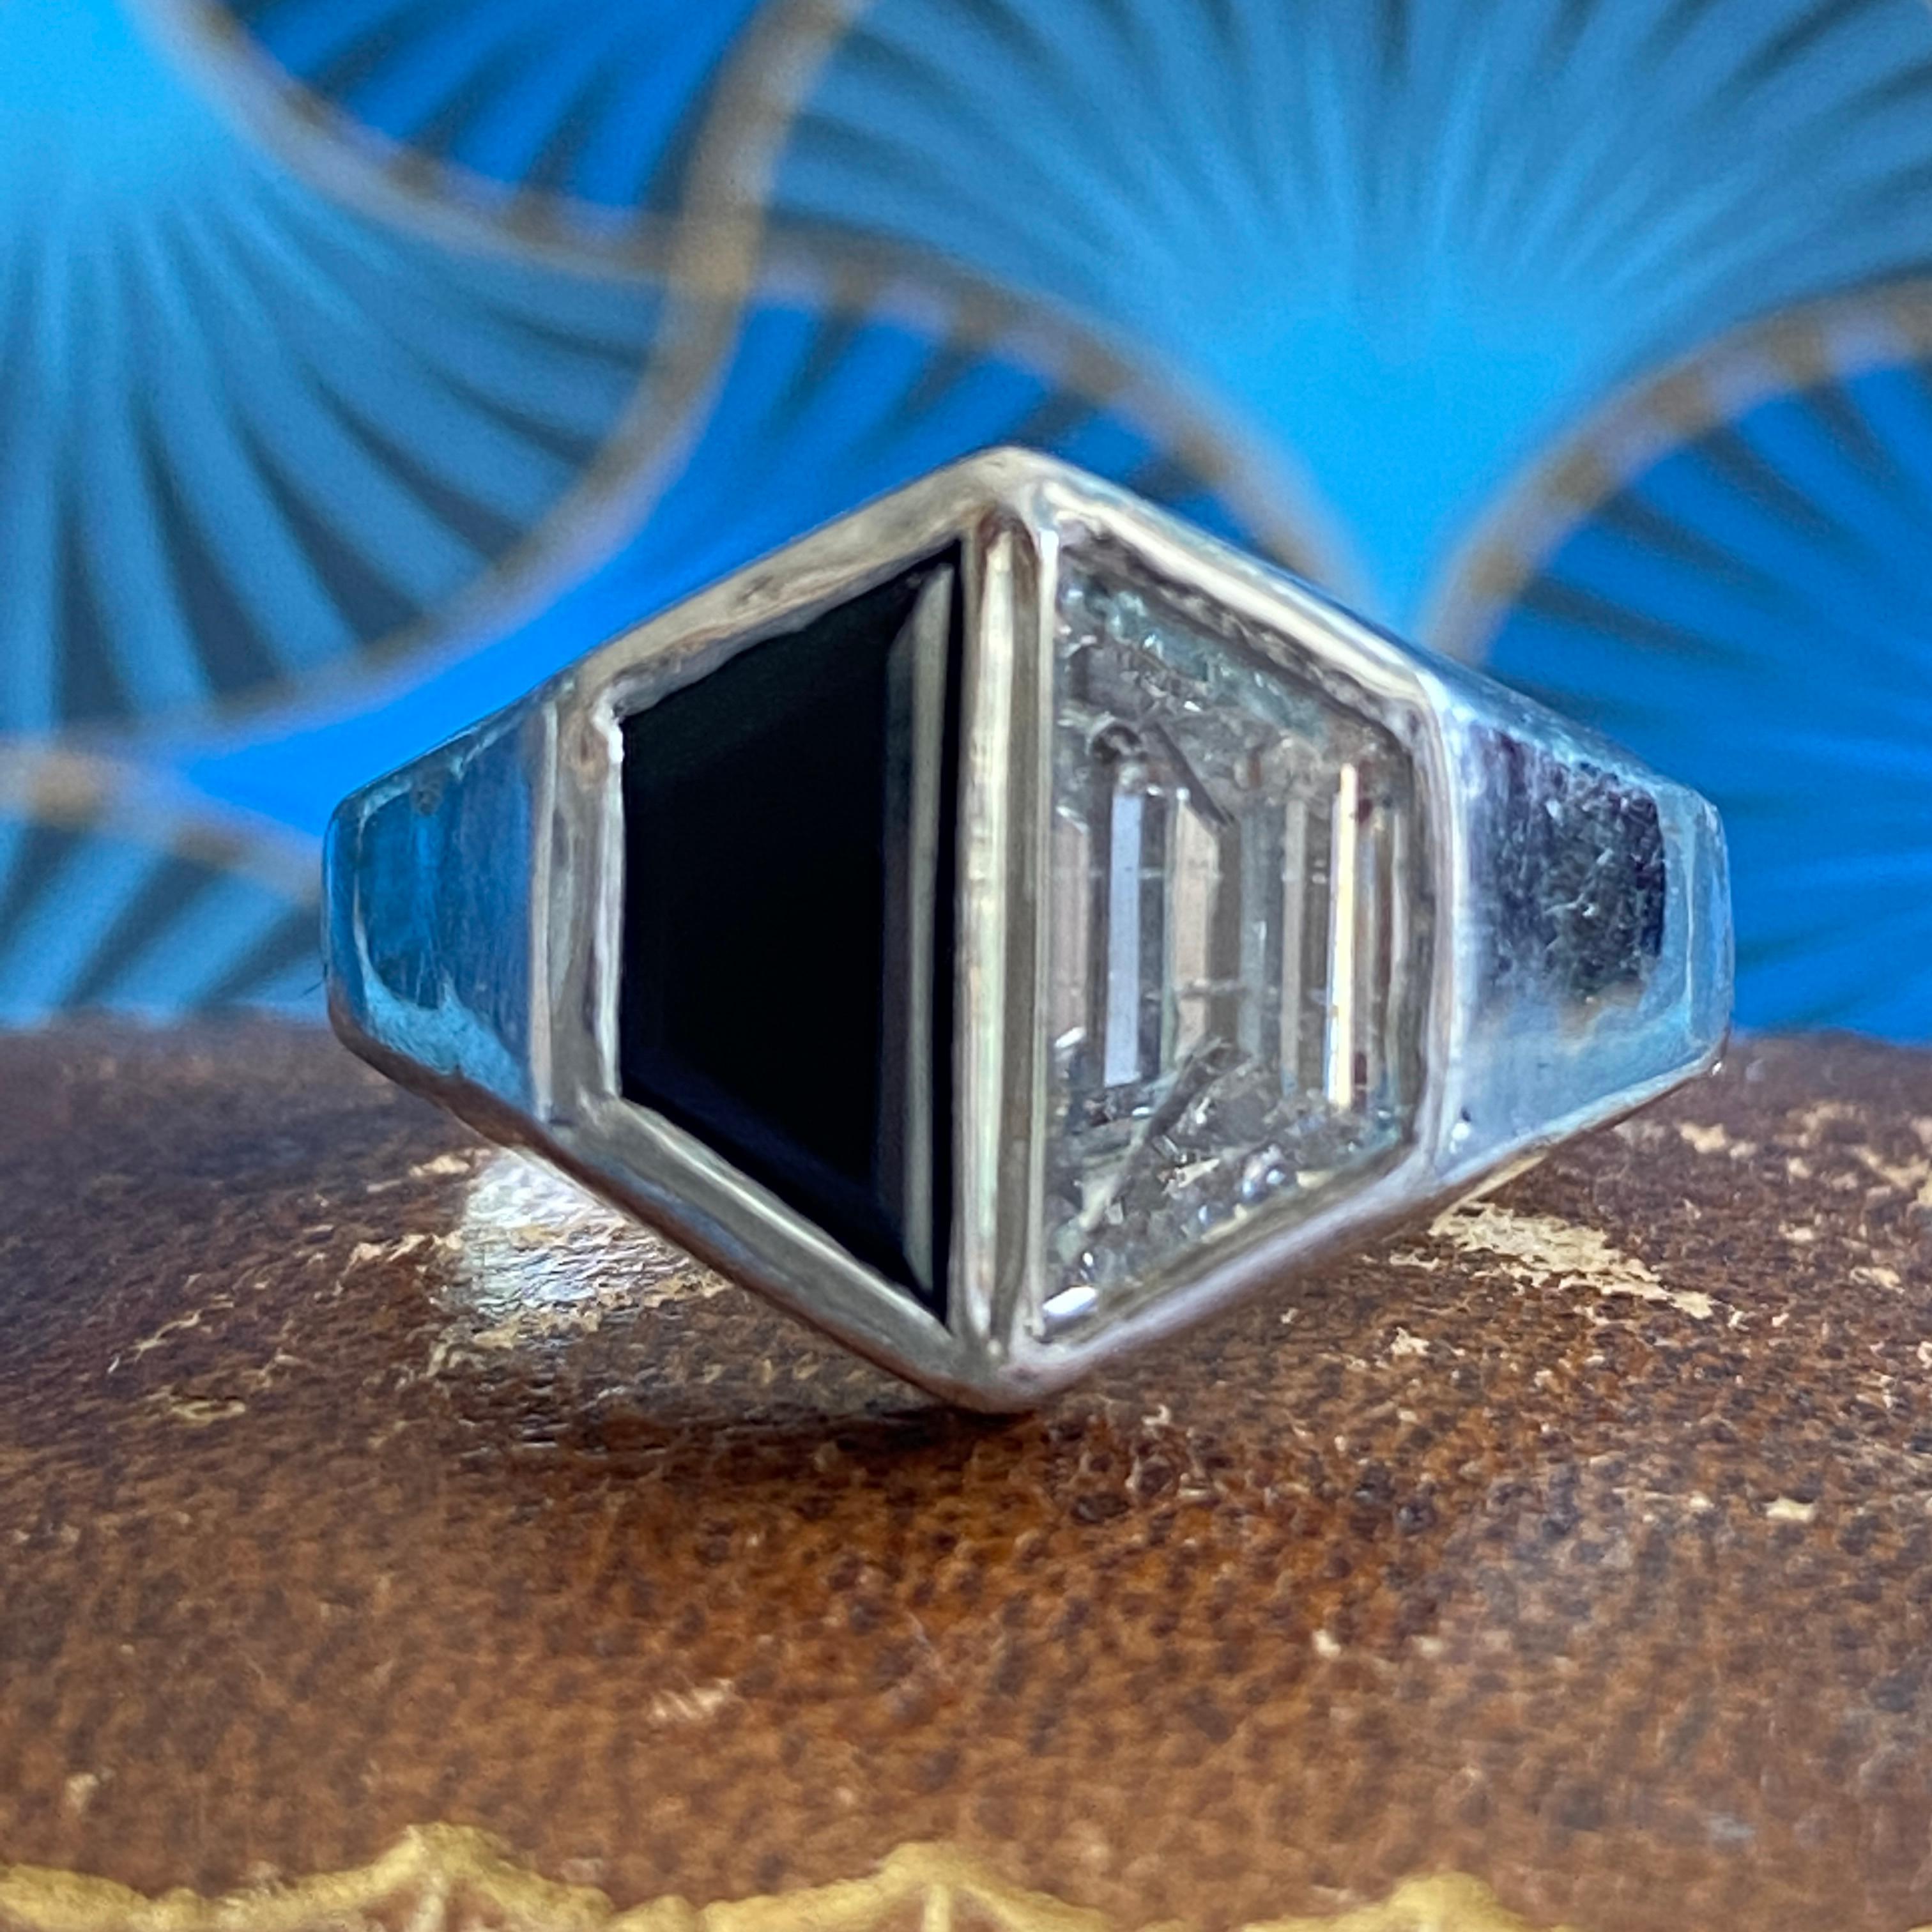 Einzelheiten:
Atemberaubender Vintage-Ring aus 18 Karat Weißgold, Onyx und Diamanten - auch ein schöner Ehering! Der Diamant hat einen geschätzten Wert von 1,27 Karat und passt zum Onyx. Die Fassung dieses Rings ist wunderschön und in guter Form.